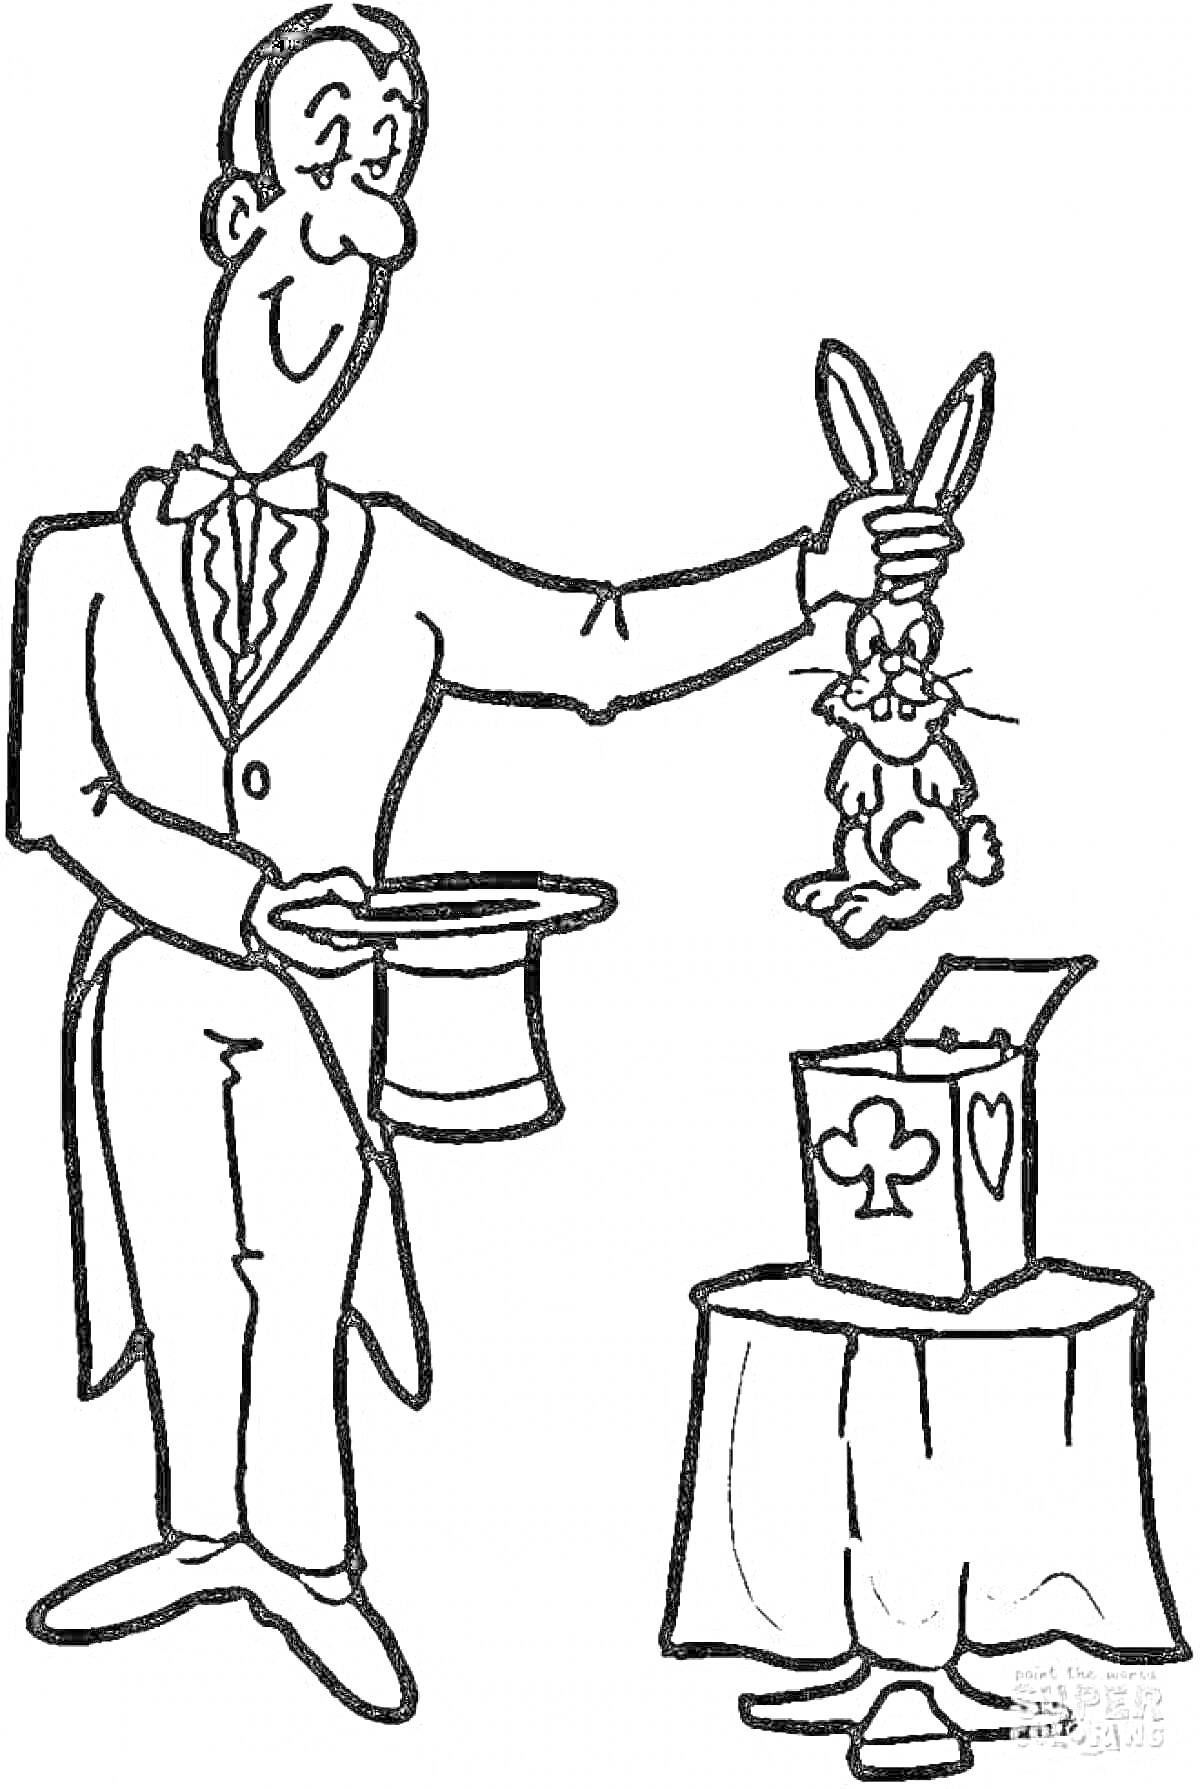 Волшебник с цилиндром и кроликом из шляпы рядом с коробкой на столе